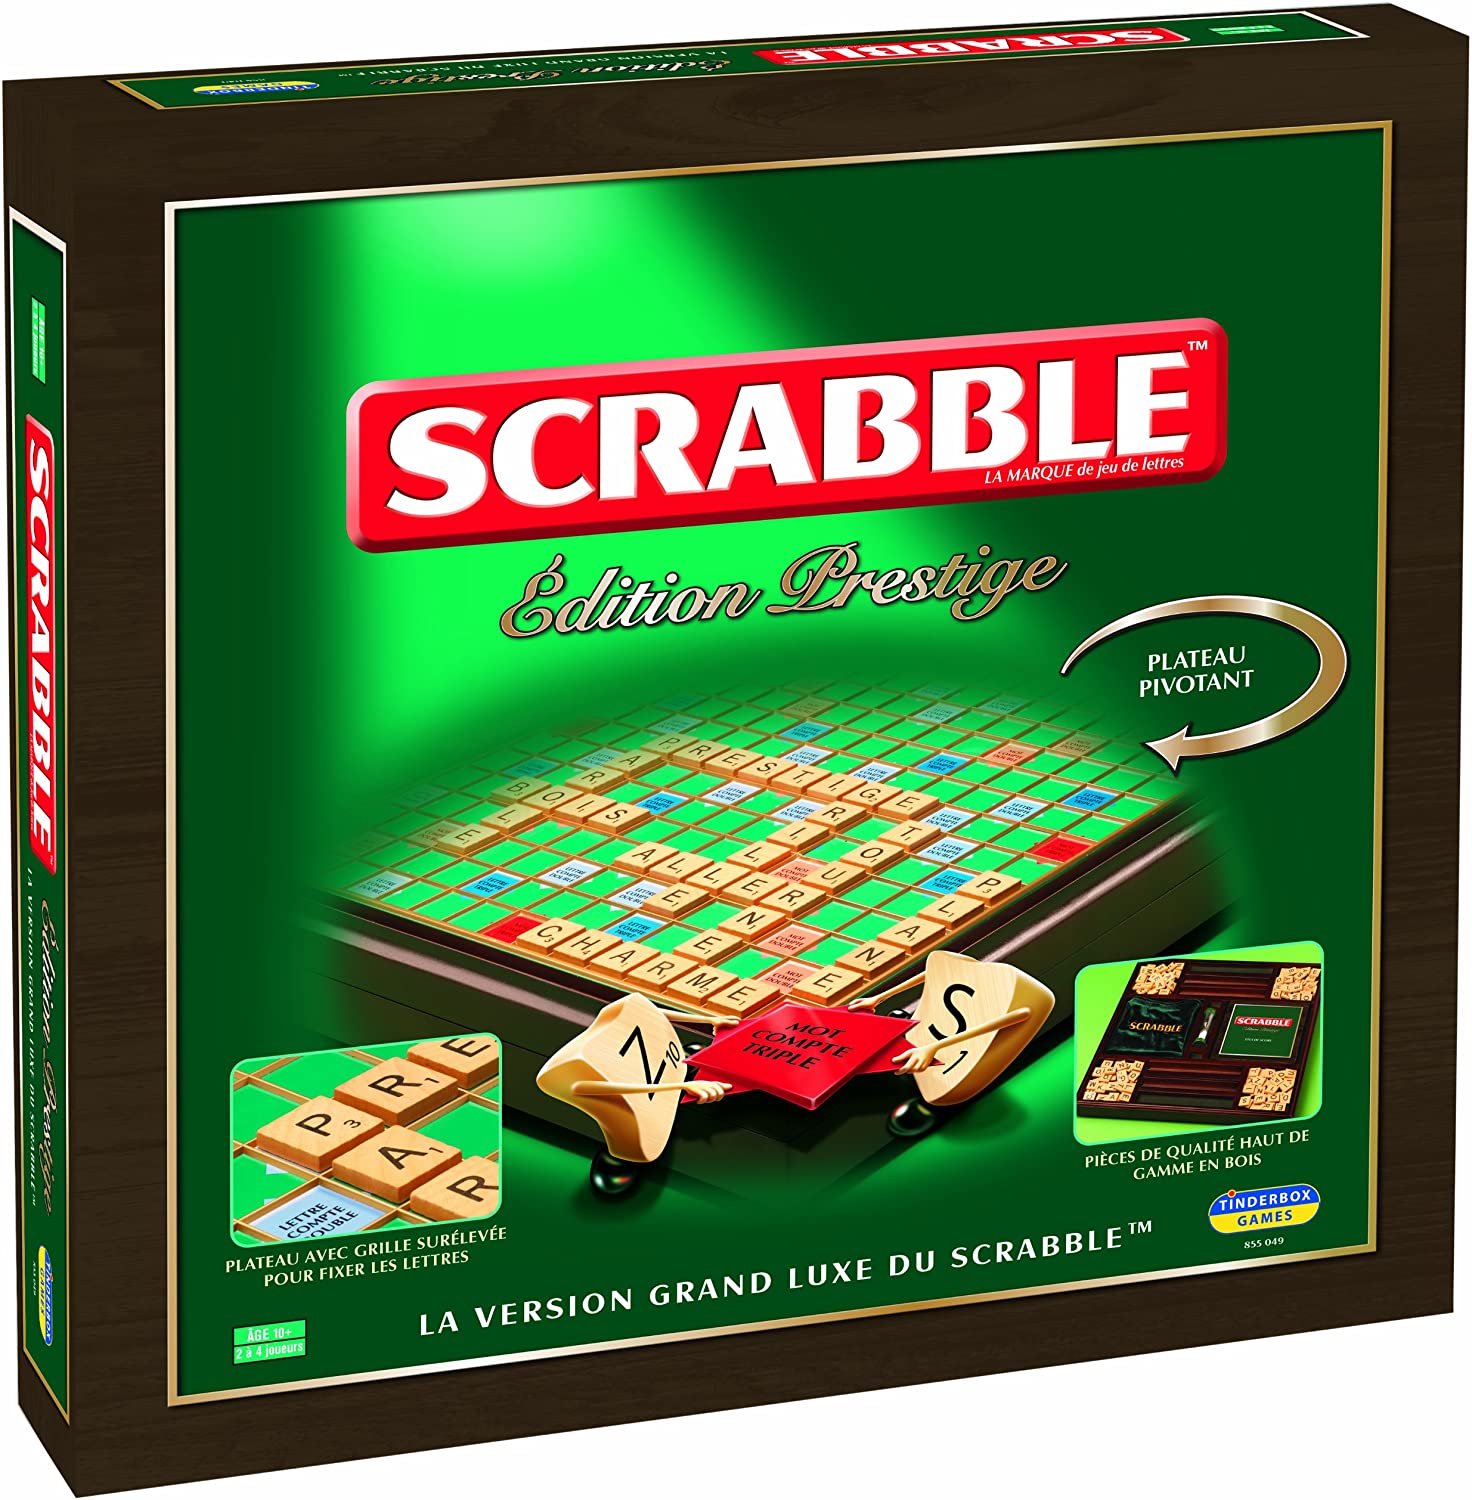 Tricher au Scrabble : Solveur de mots en 1 clic